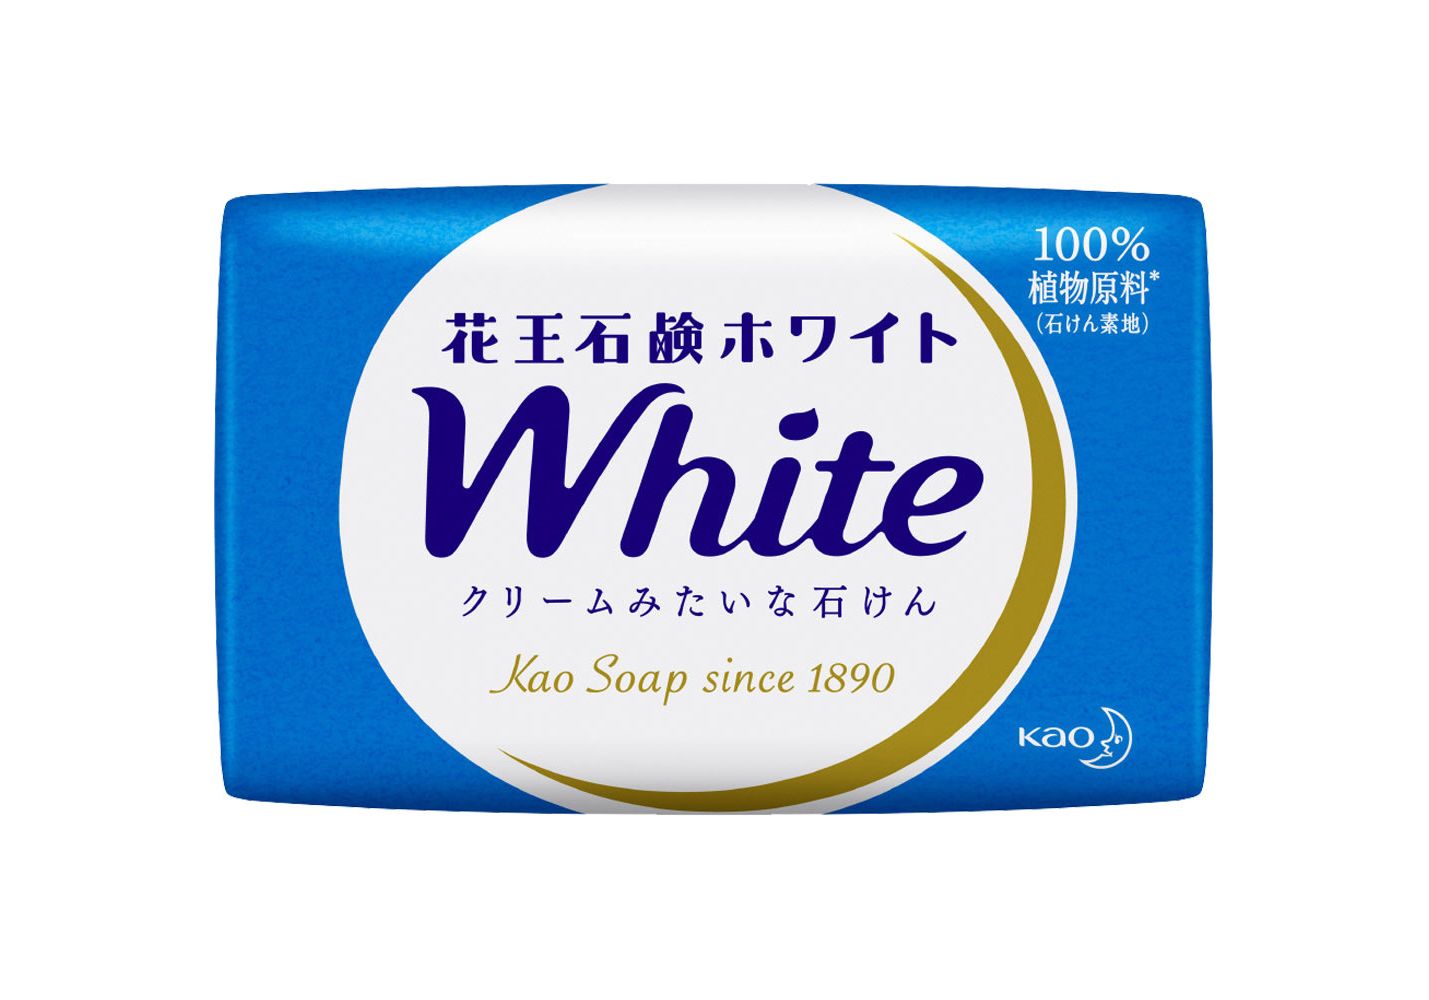 фото Kao «white» - увлажняющее крем-мыло для тела с ароматом белых цветов, 85 гр. megrhythm